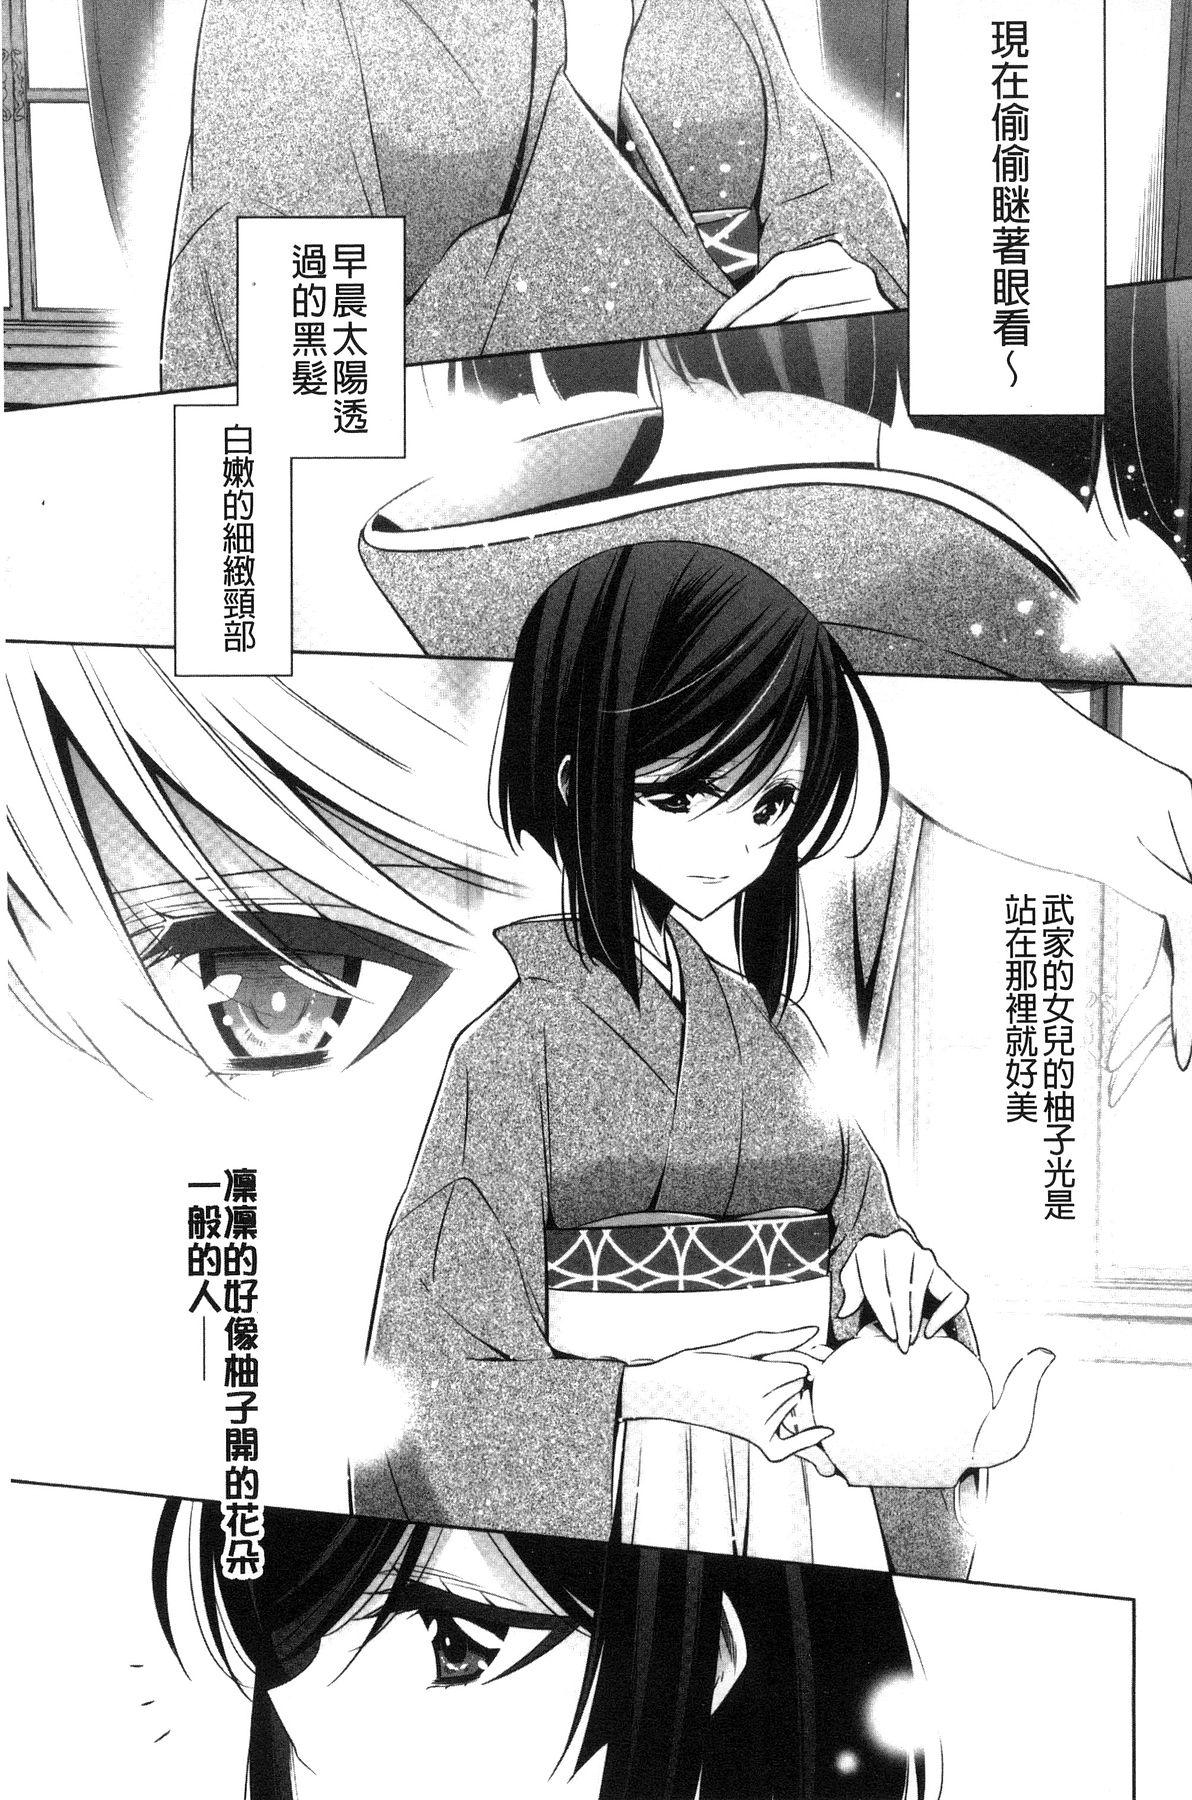 Kanojo to Watashi no Himitsu no Koi - She falls in love with her 153